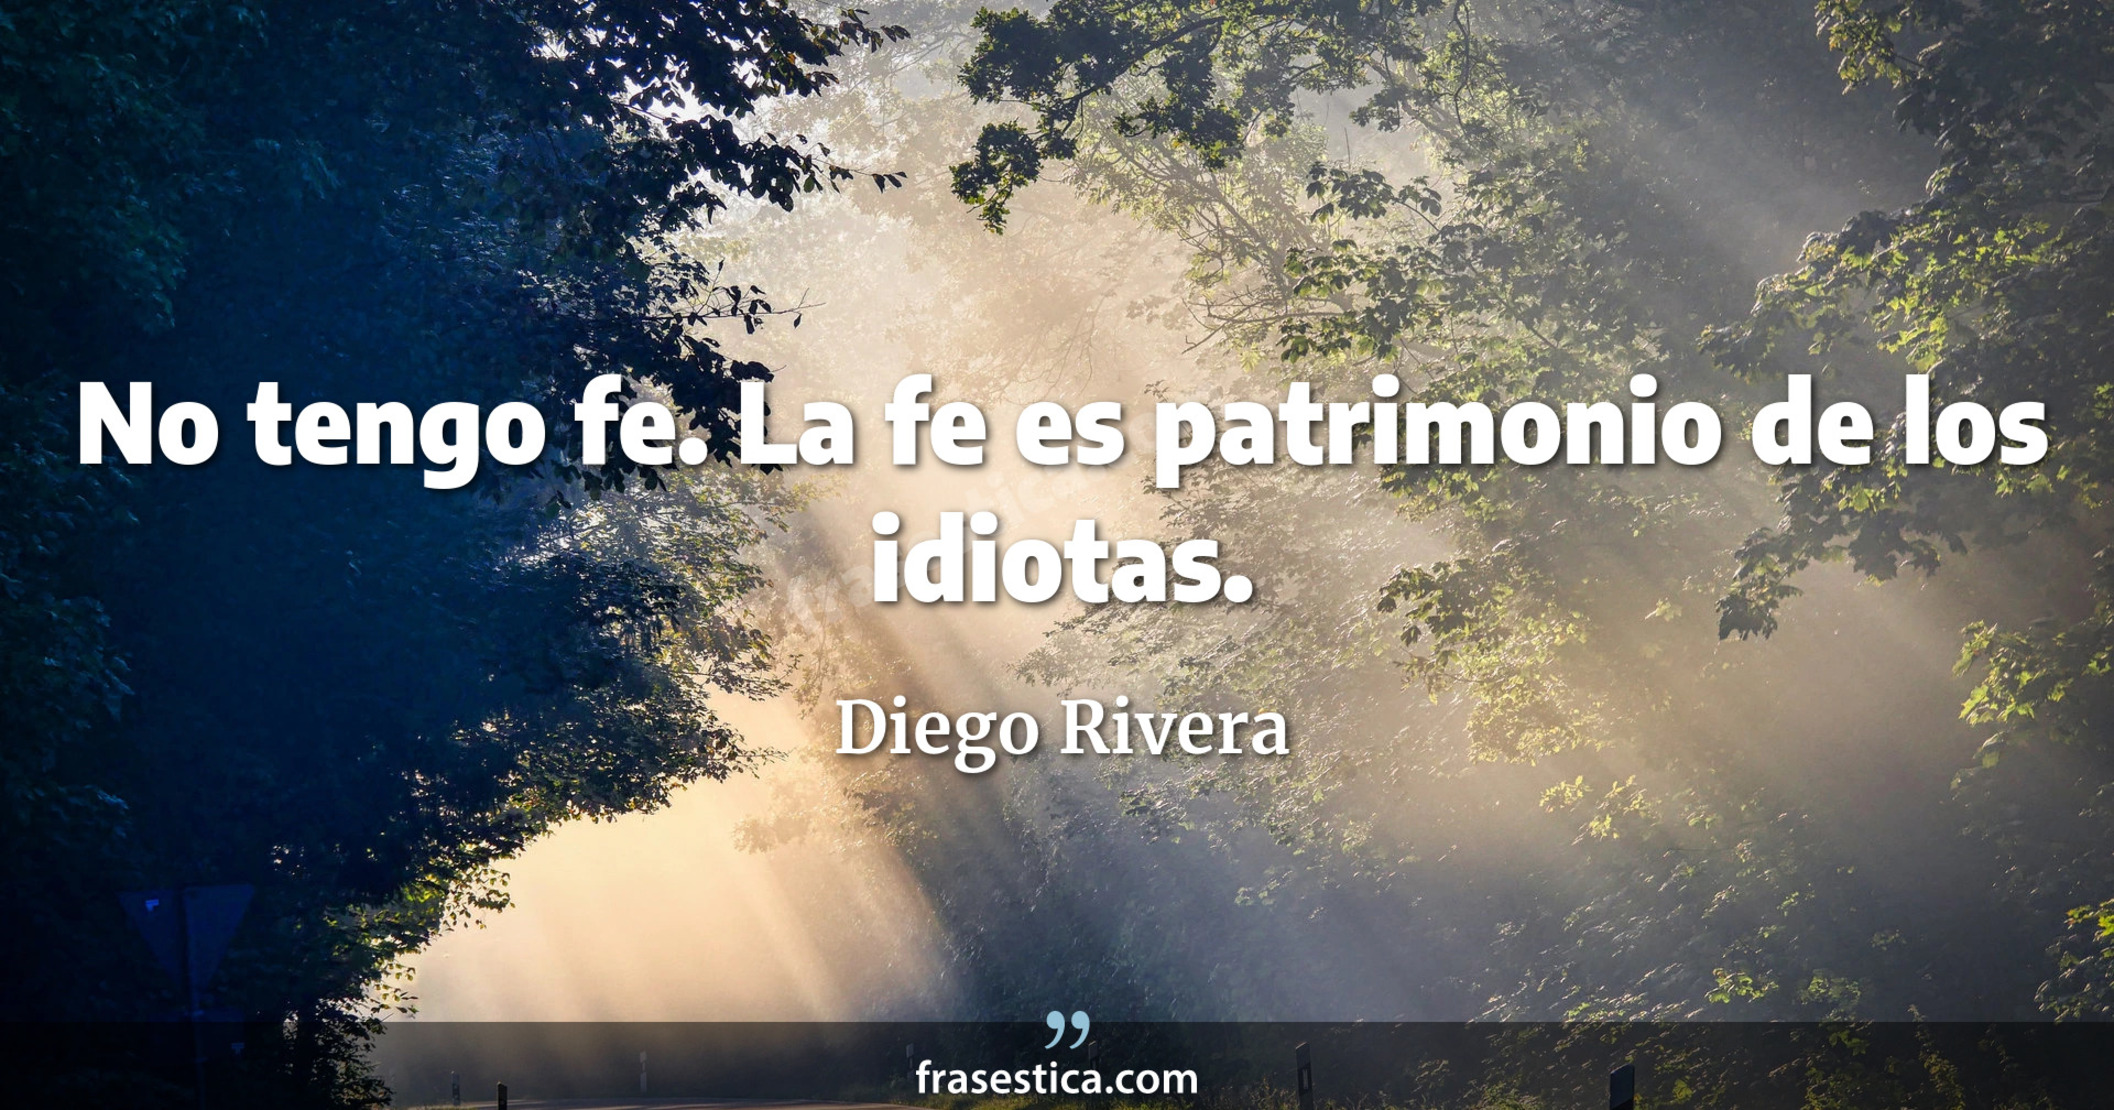 No tengo fe. La fe es patrimonio de los idiotas. - Diego Rivera